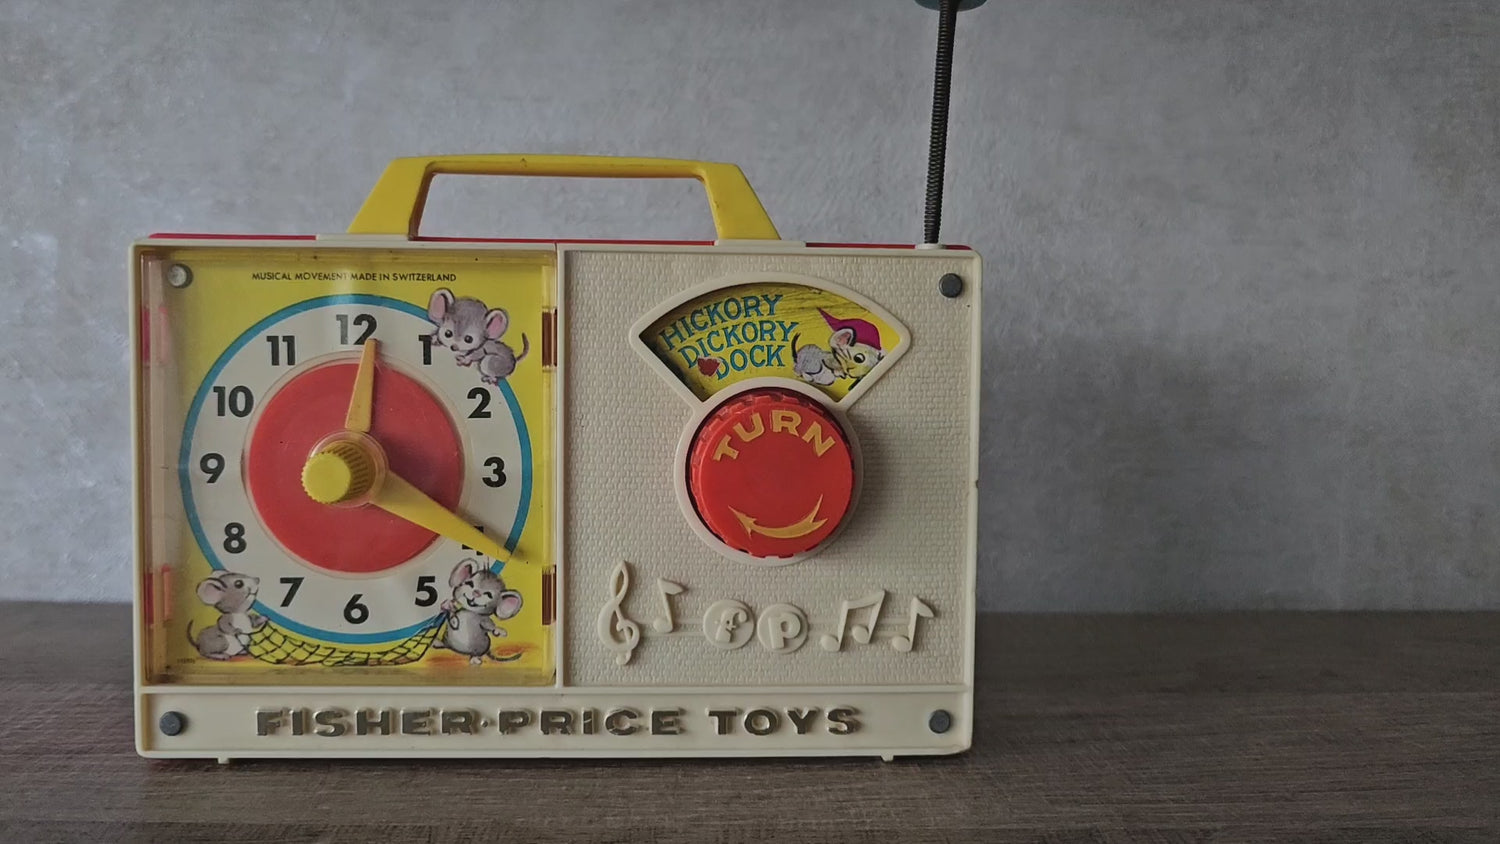 Fisher price vintage muziekdoosje met klok